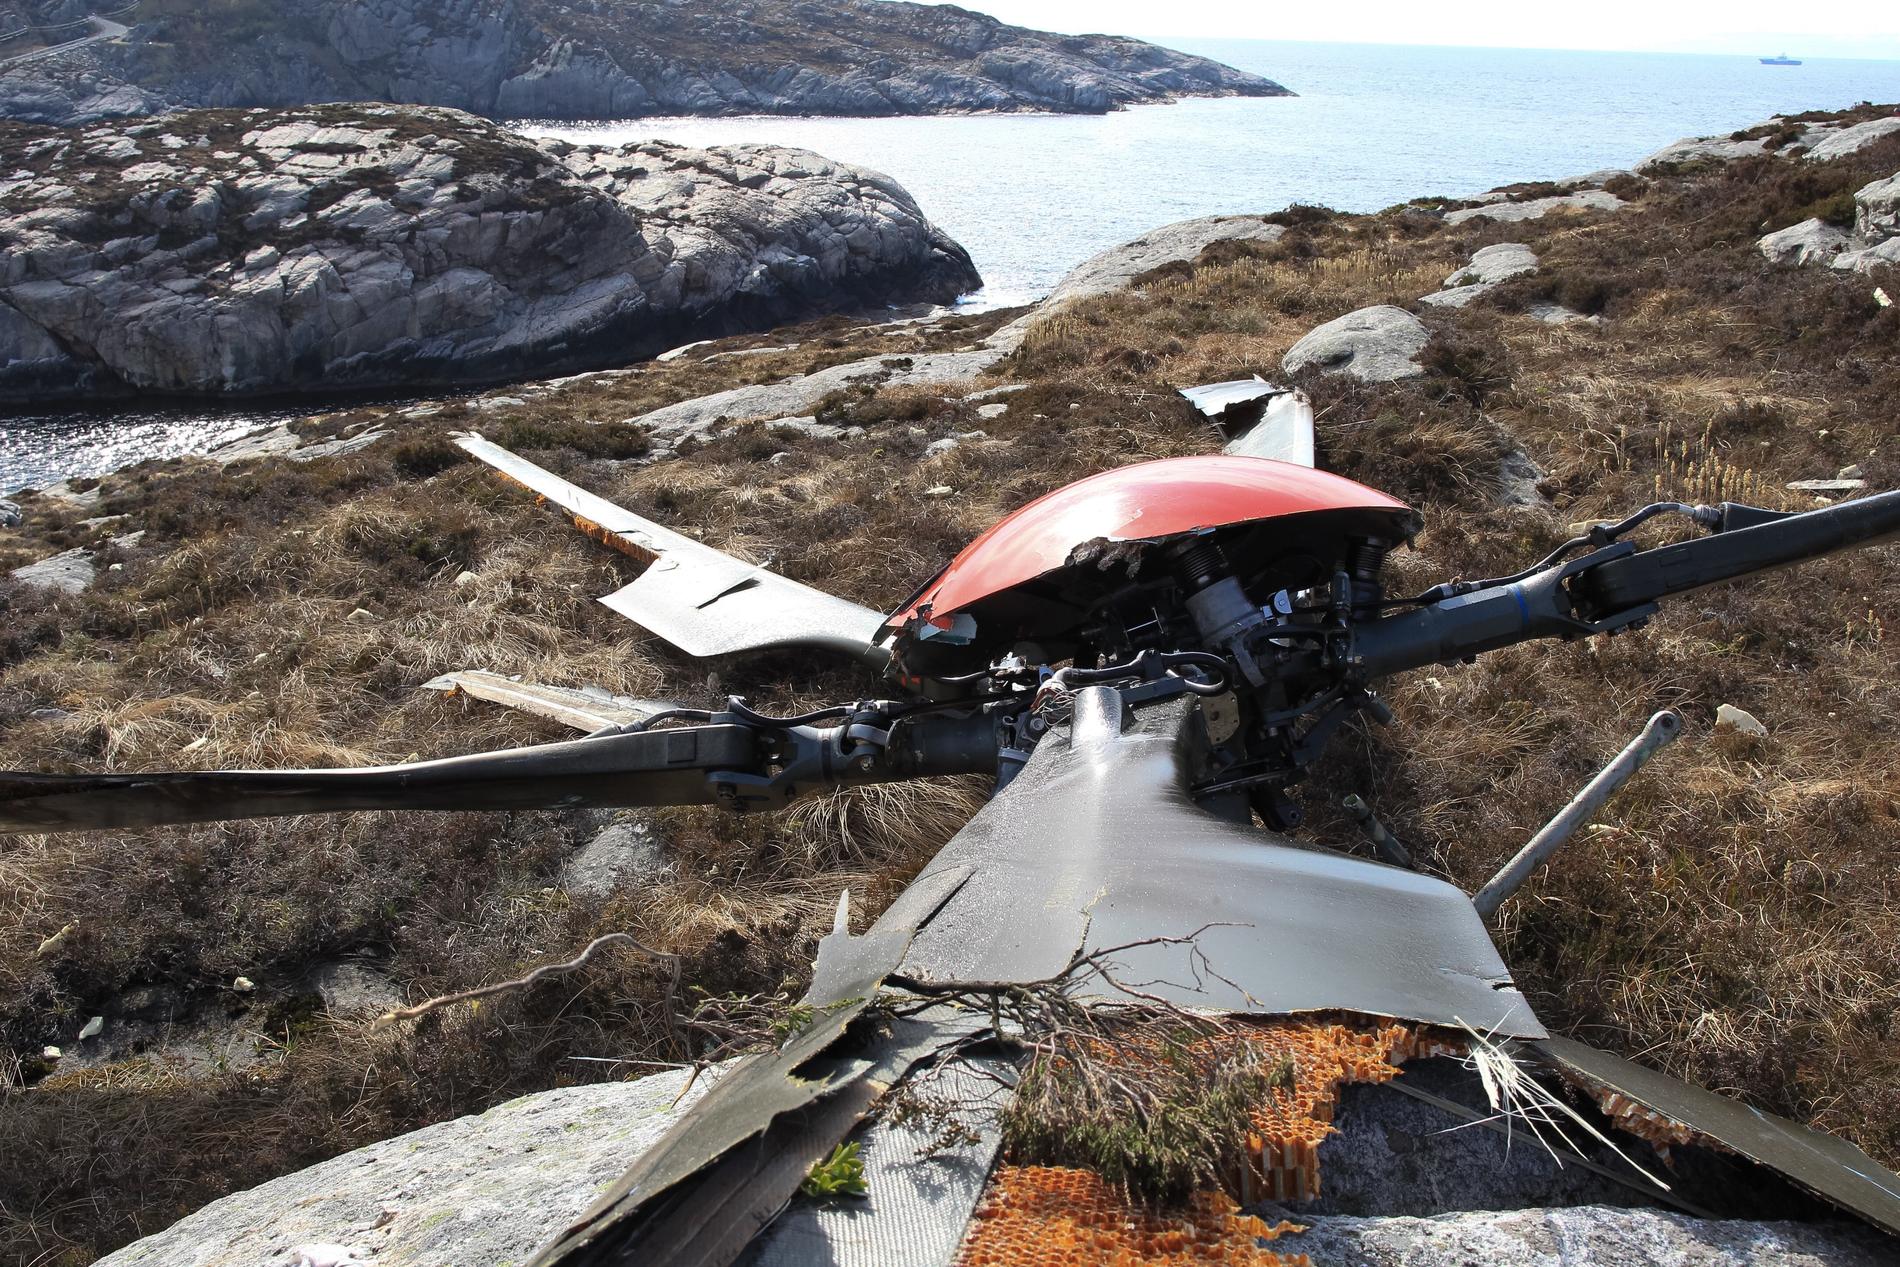 FALT AV: Helikopteret styrtet etter at rotorhodet falt av. Rotoren ble funnet på land, mens helikopteret først traff en holme og deretter falt i sjøen noen hundre meter unna. ARKIVFOTO: RUNE NIELSEN